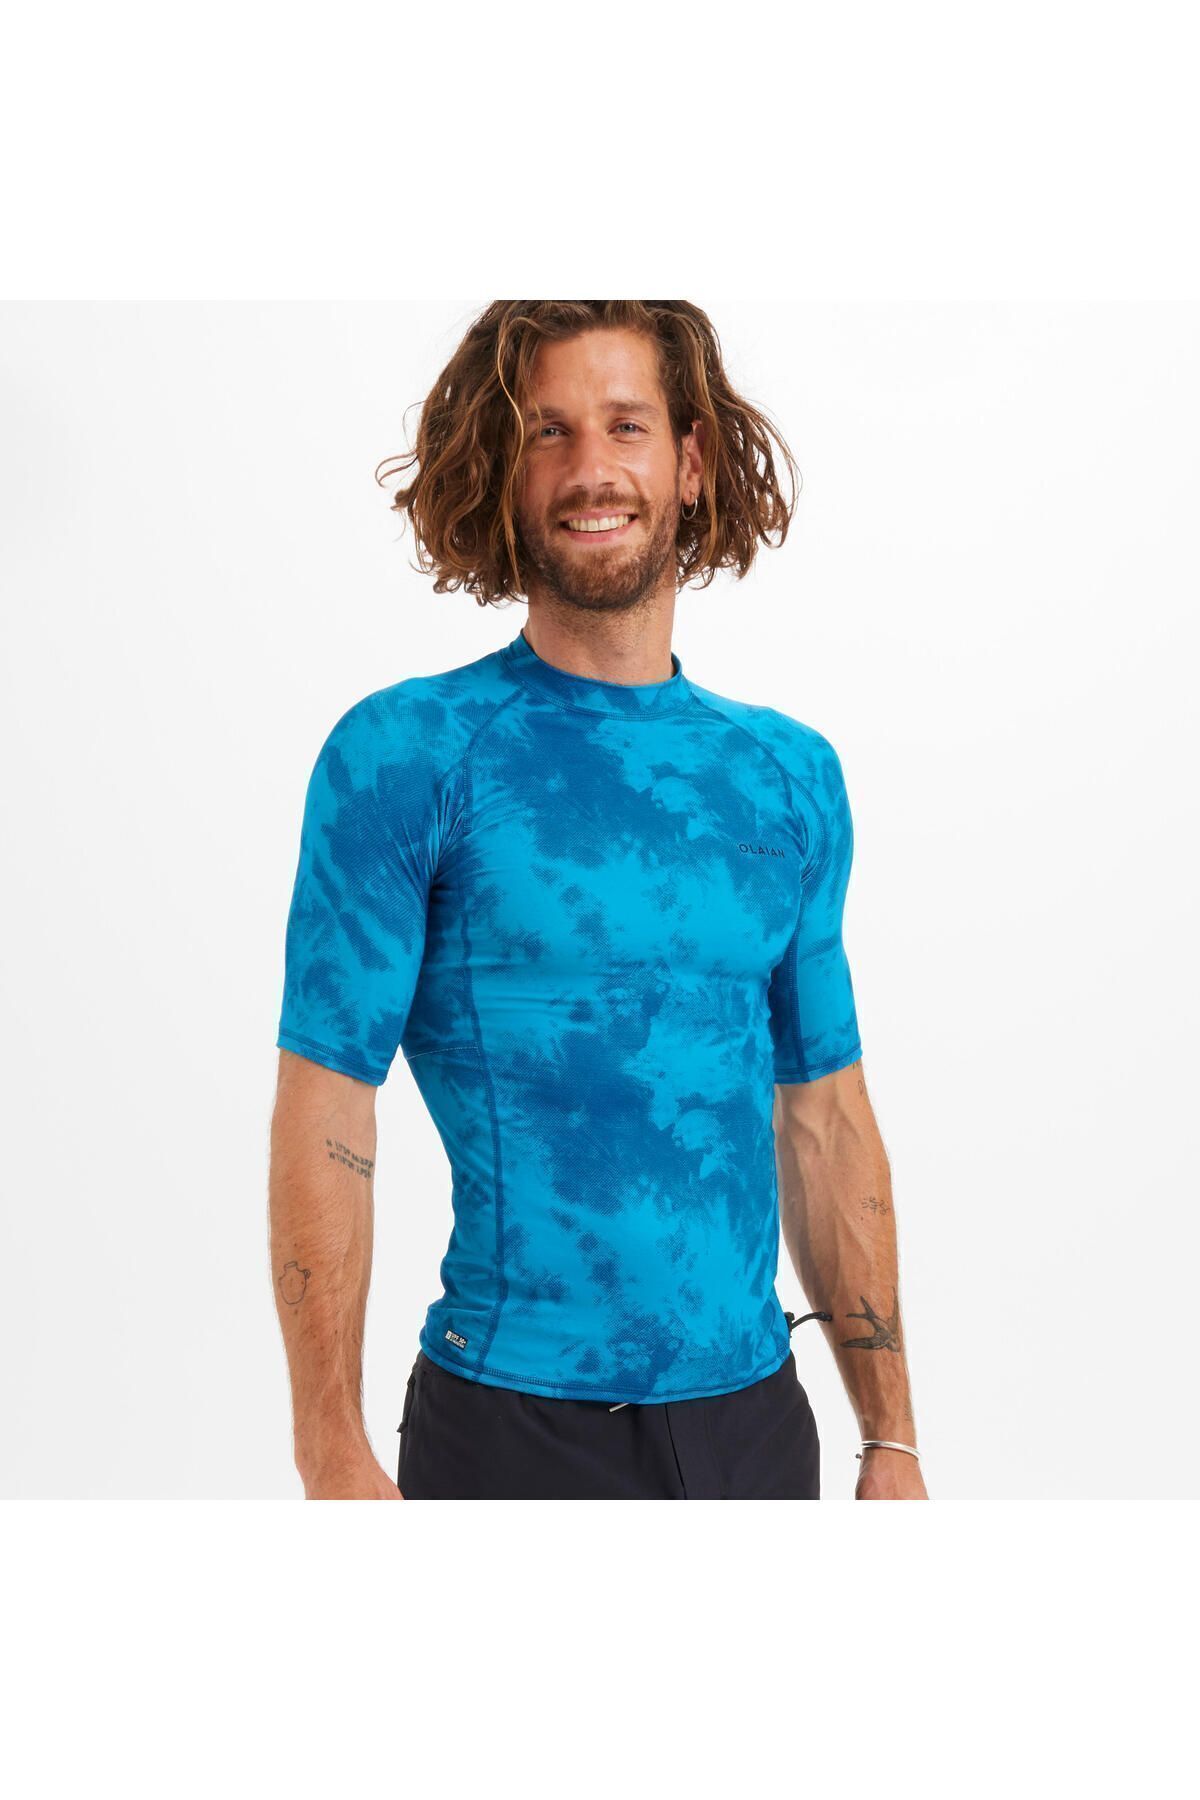 Decathlon Erkek Slim Fit Kısa Kollu UV Korumalı Tişört - Mavi - Desenli - 100